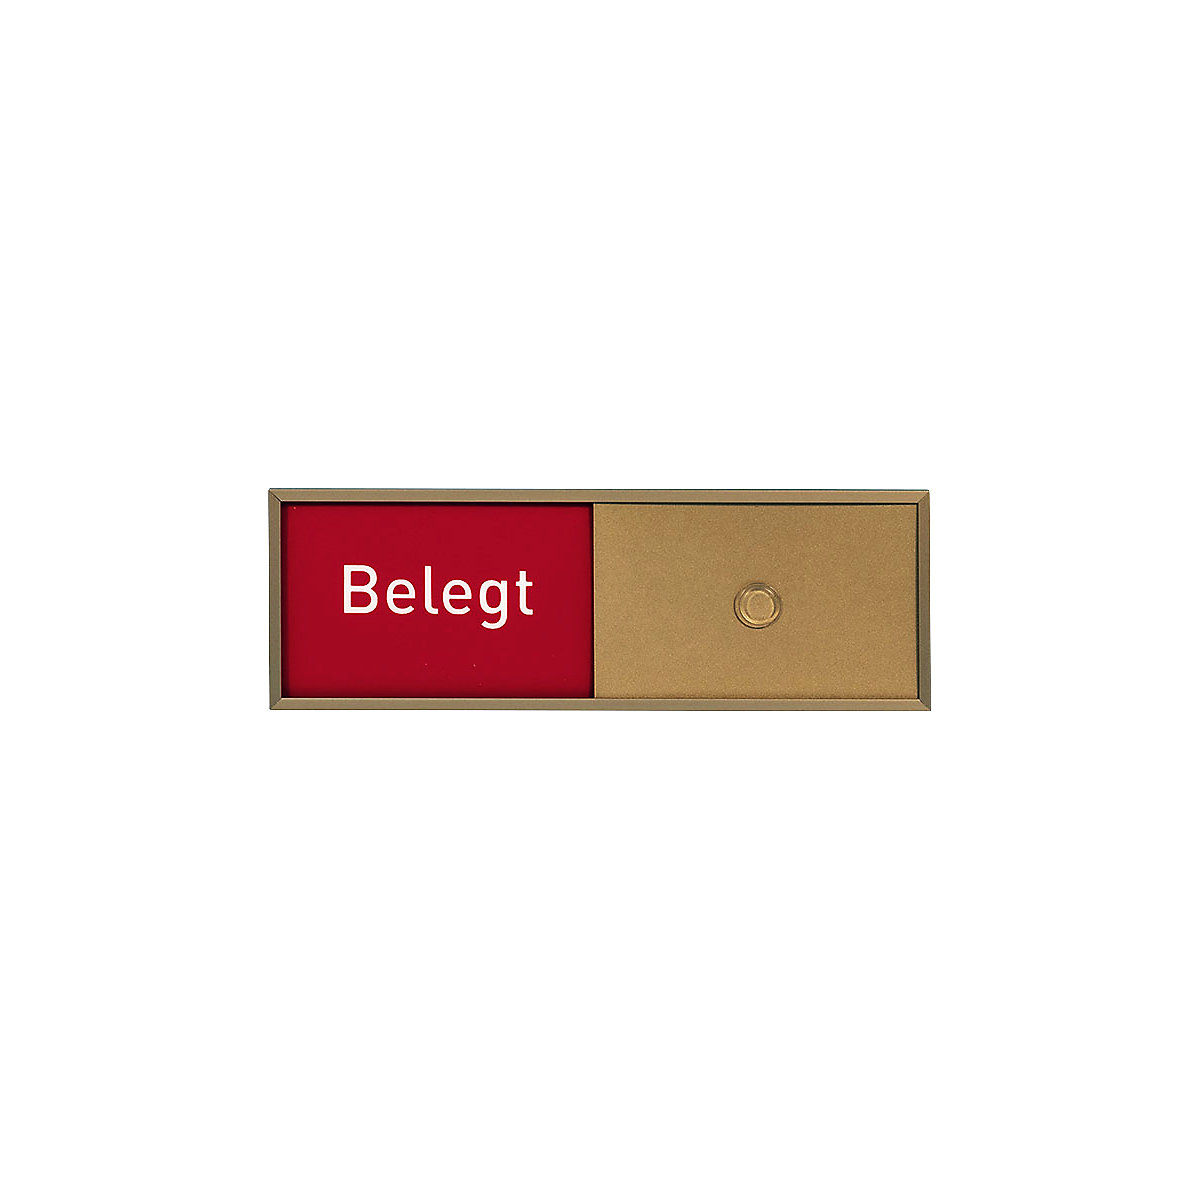 Frei-/Belegt-Anzeige, in 5 Sprachen, BxHxT 150,5 x 50,5 x 6 mm, bronze-2